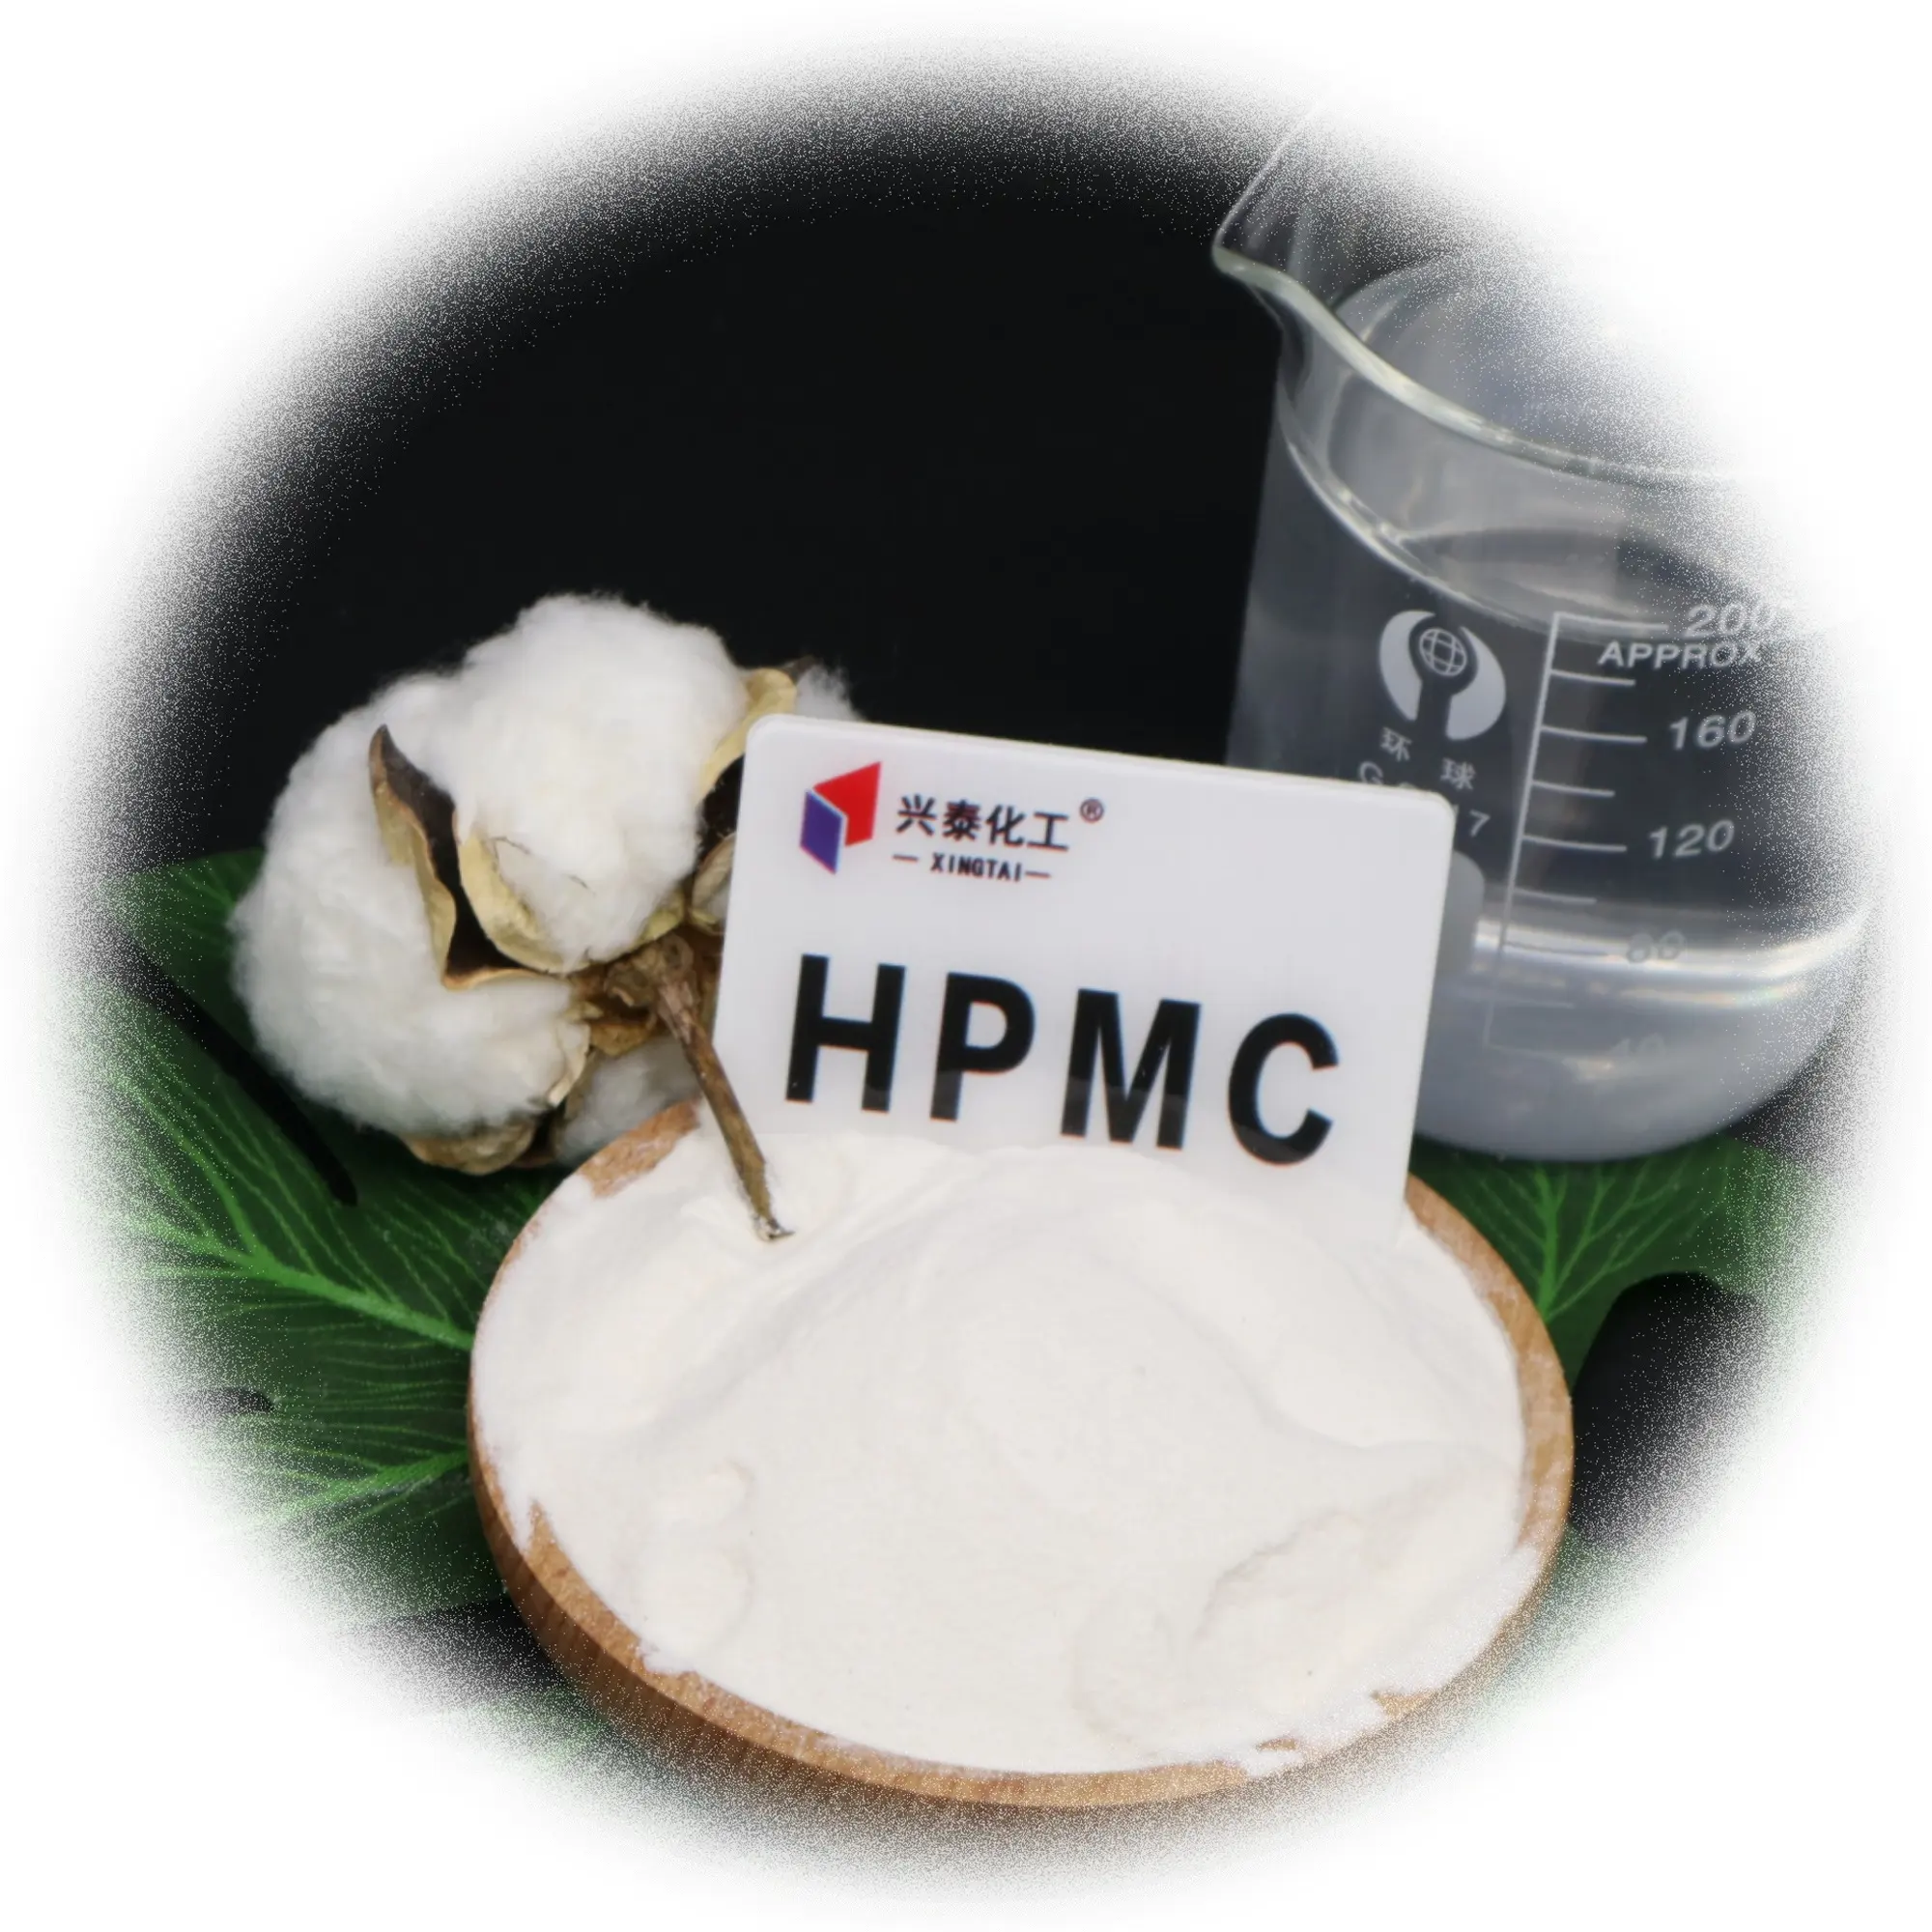 لاصقات بلاط مسحوق كيميائي hpmc بسعر بخصم صناعي